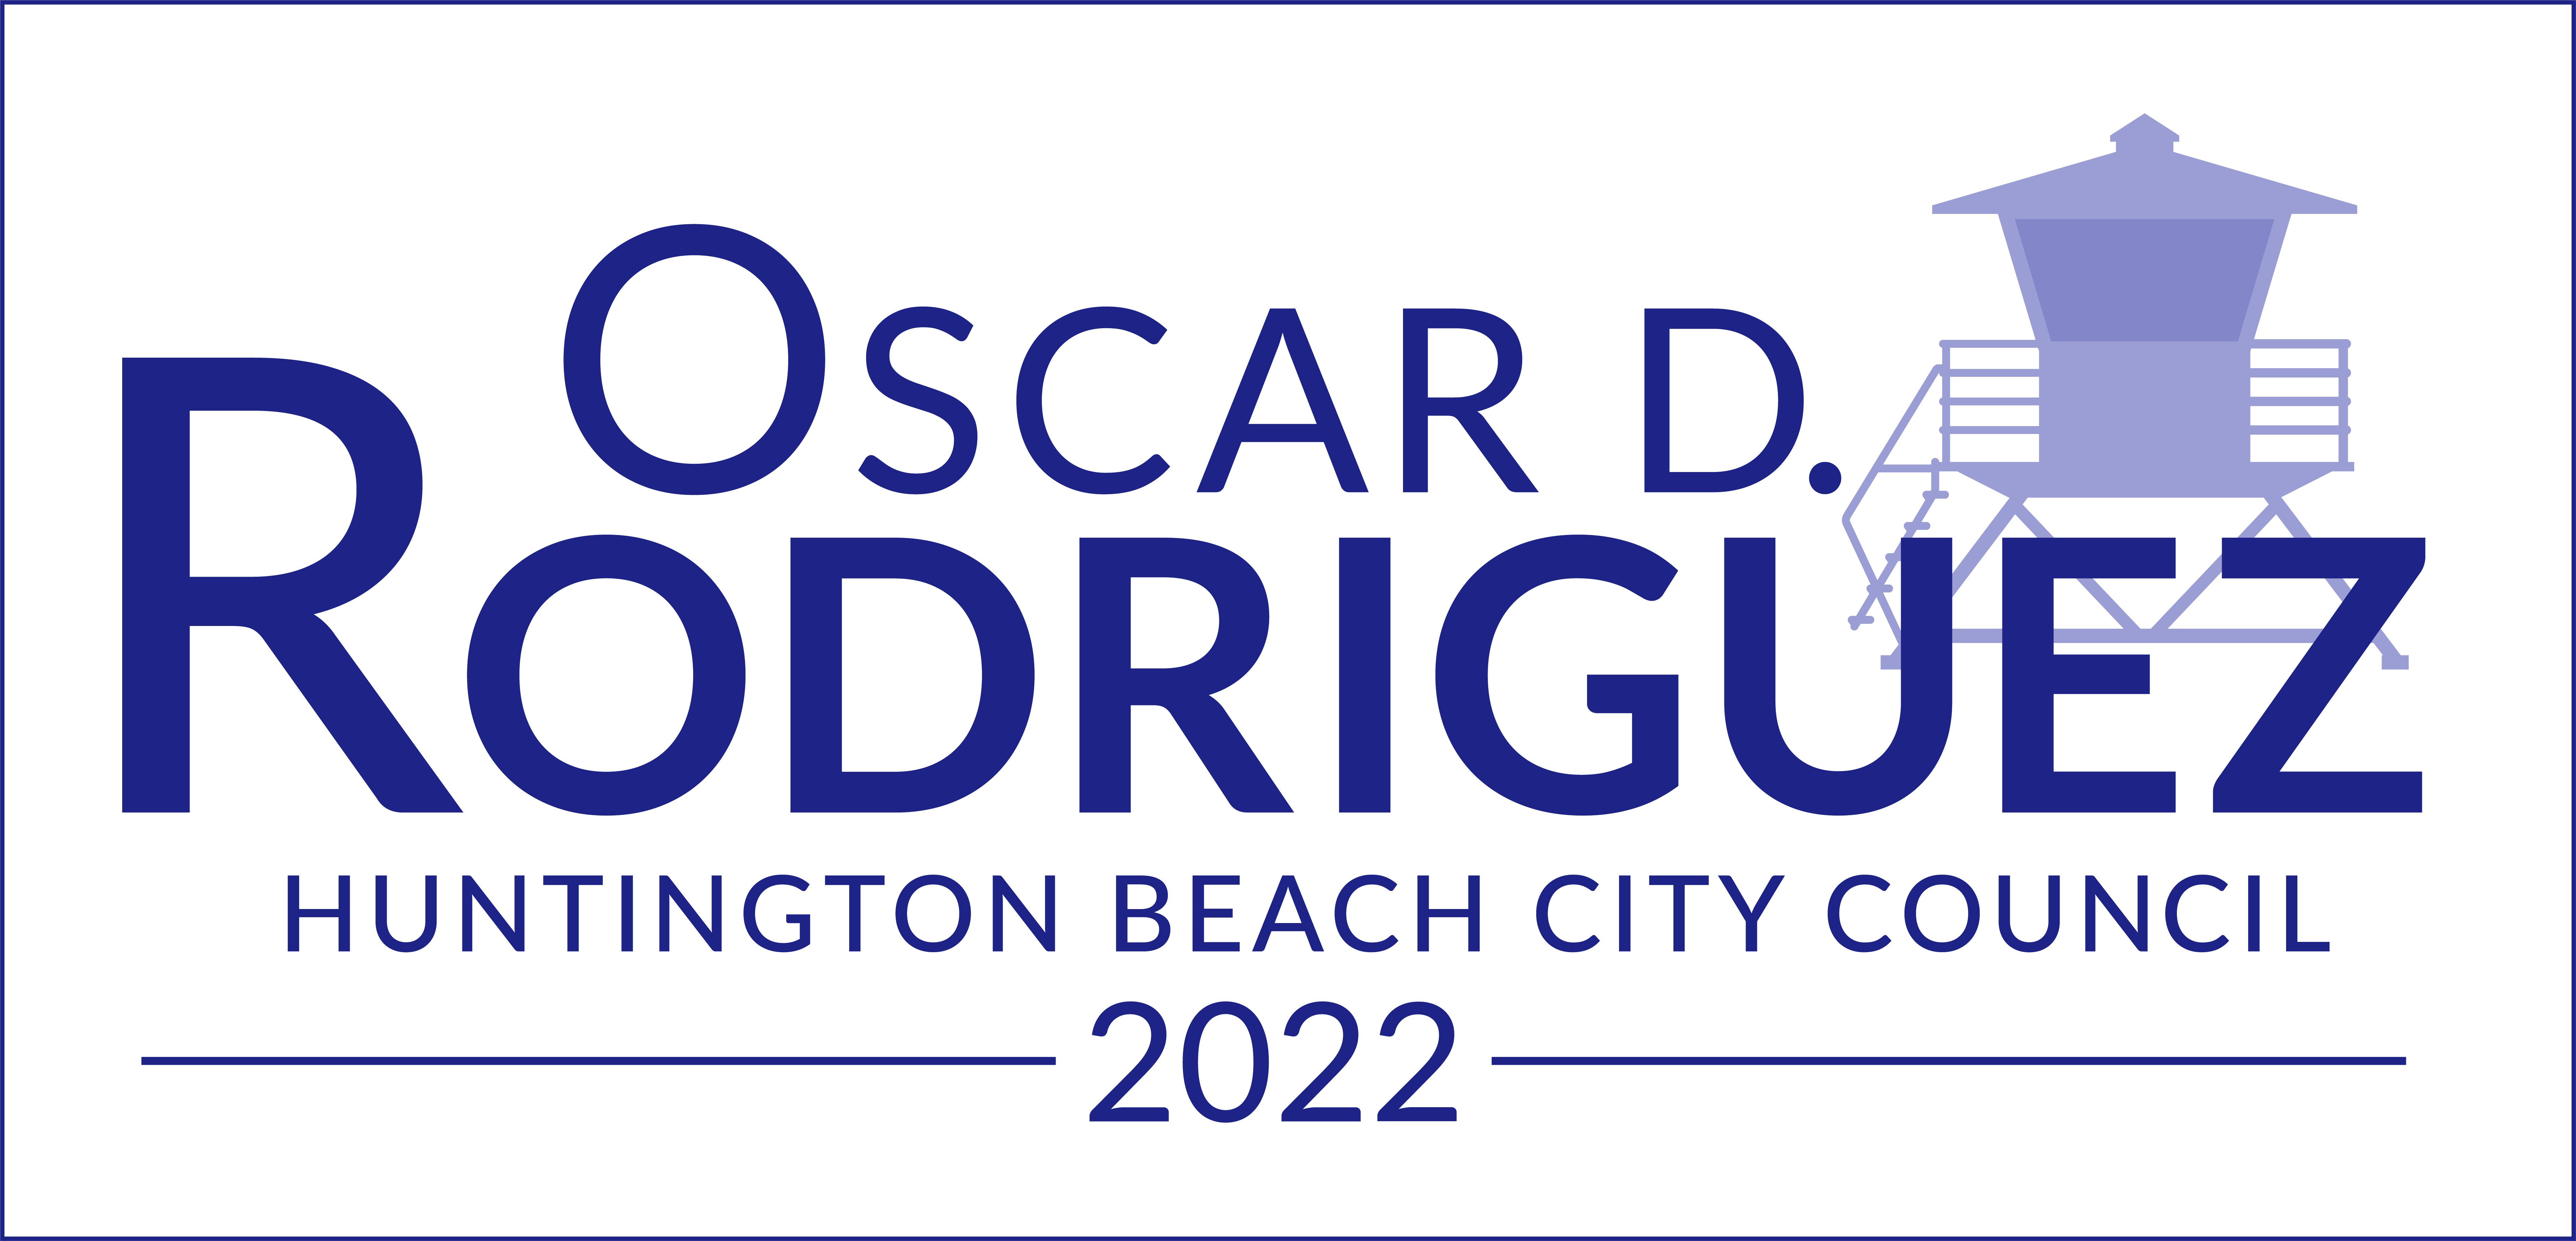 Oscar D. Rodriguez for Huntington Beach City Council 2022